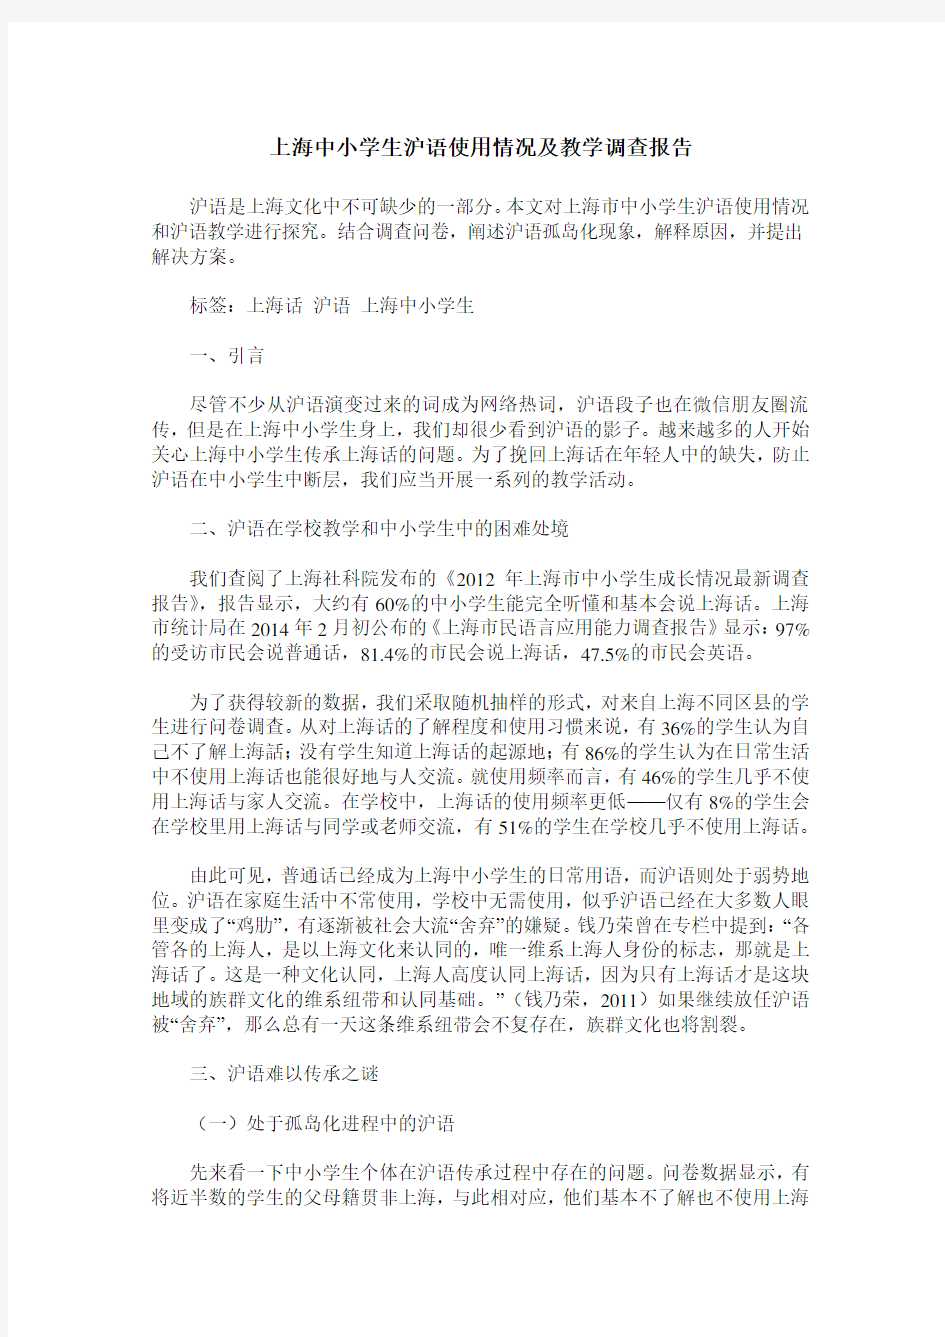 上海中小学生沪语使用情况及教学调查报告